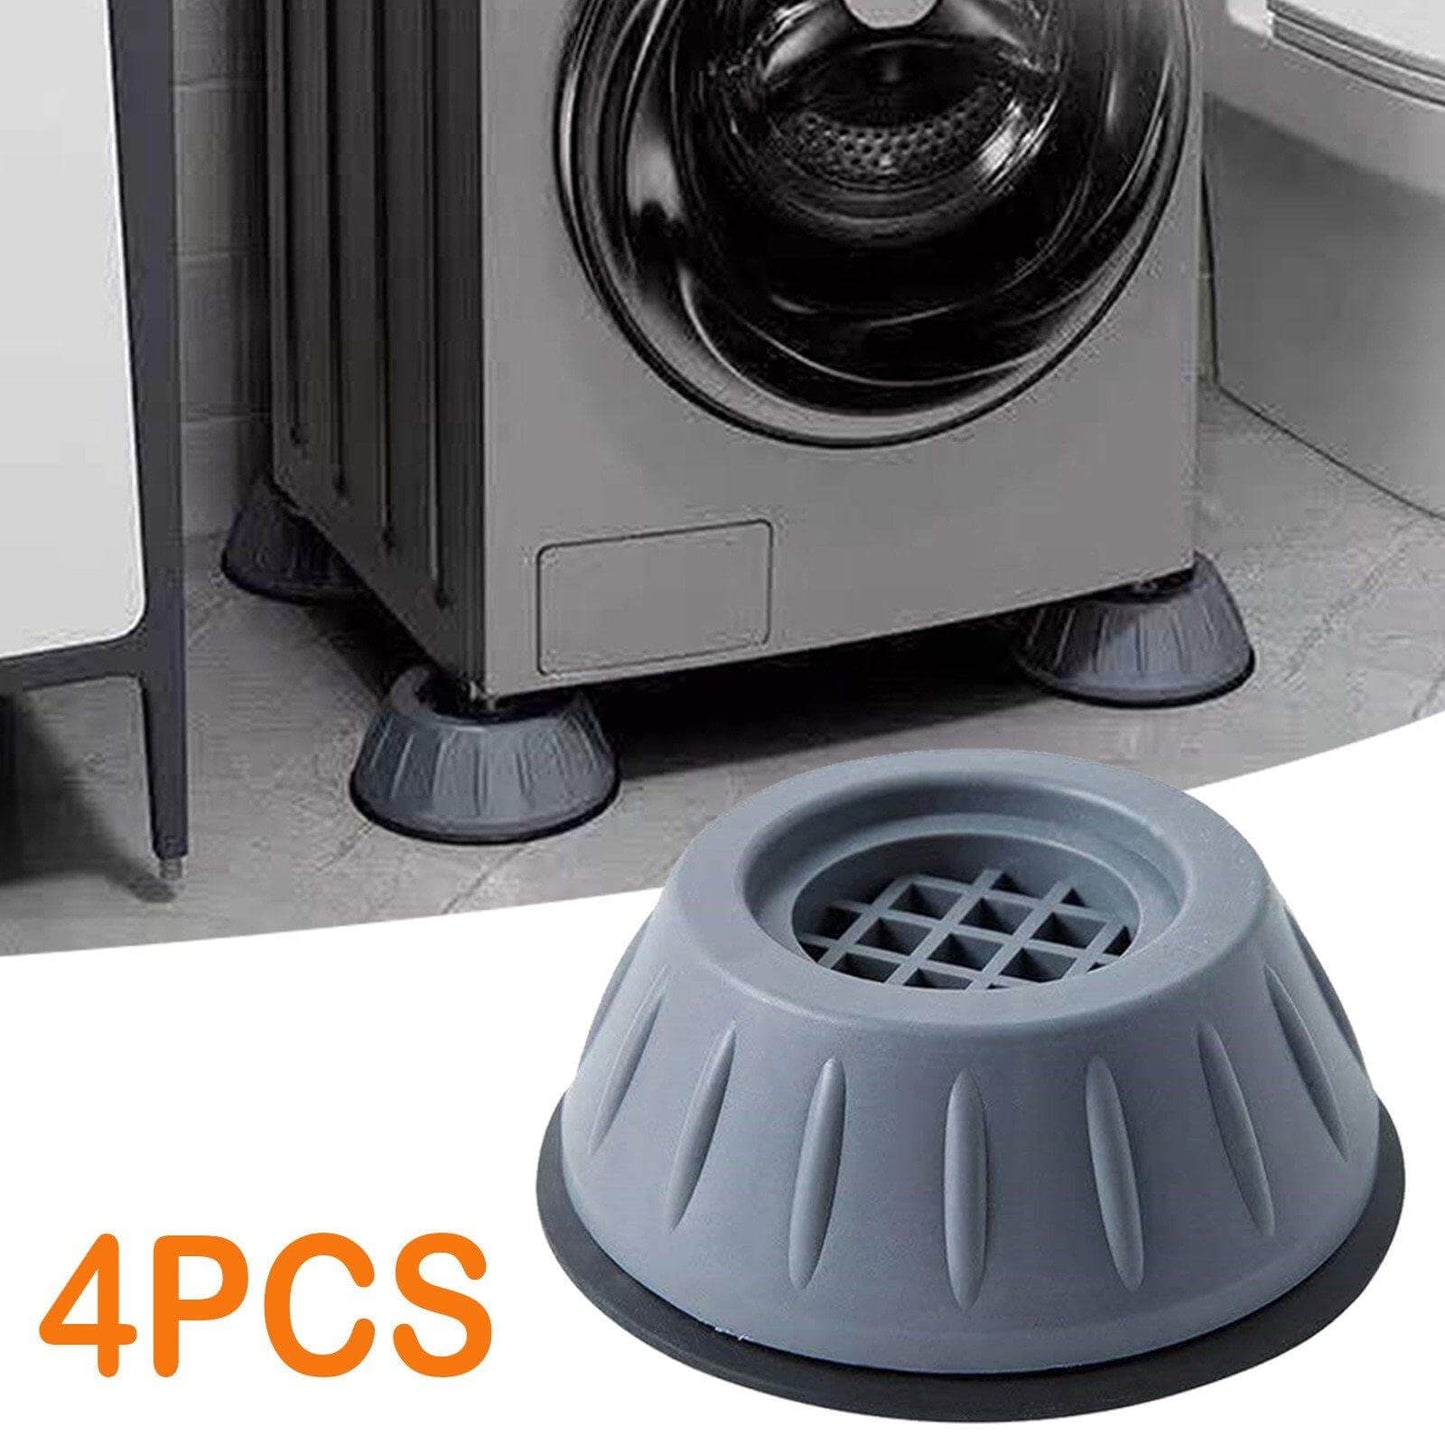 4pcs Non-slip Washing Machine Base Shock Absorber Mat